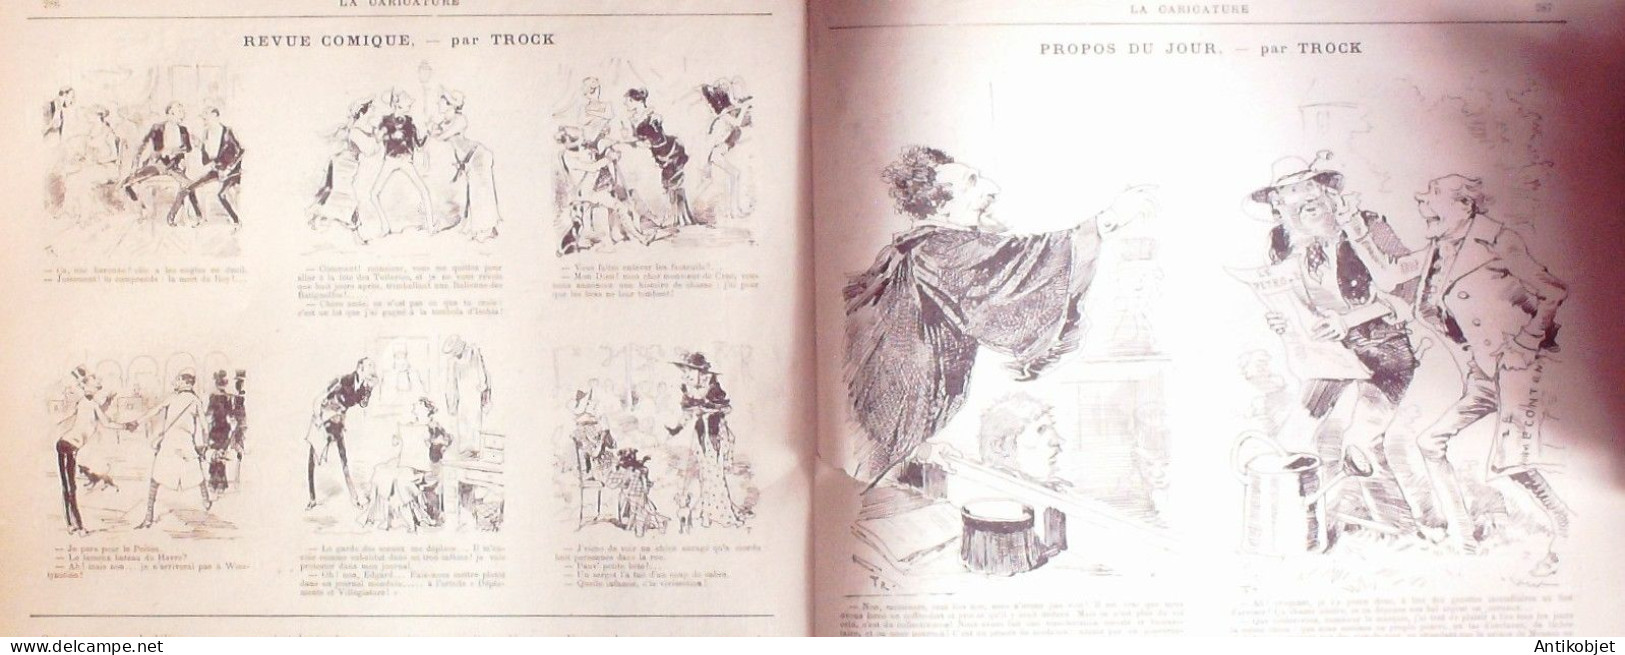 La Caricature 1883 N°193 Potinville-sur-Mer Robida Commerce WogTtrock - Revues Anciennes - Avant 1900